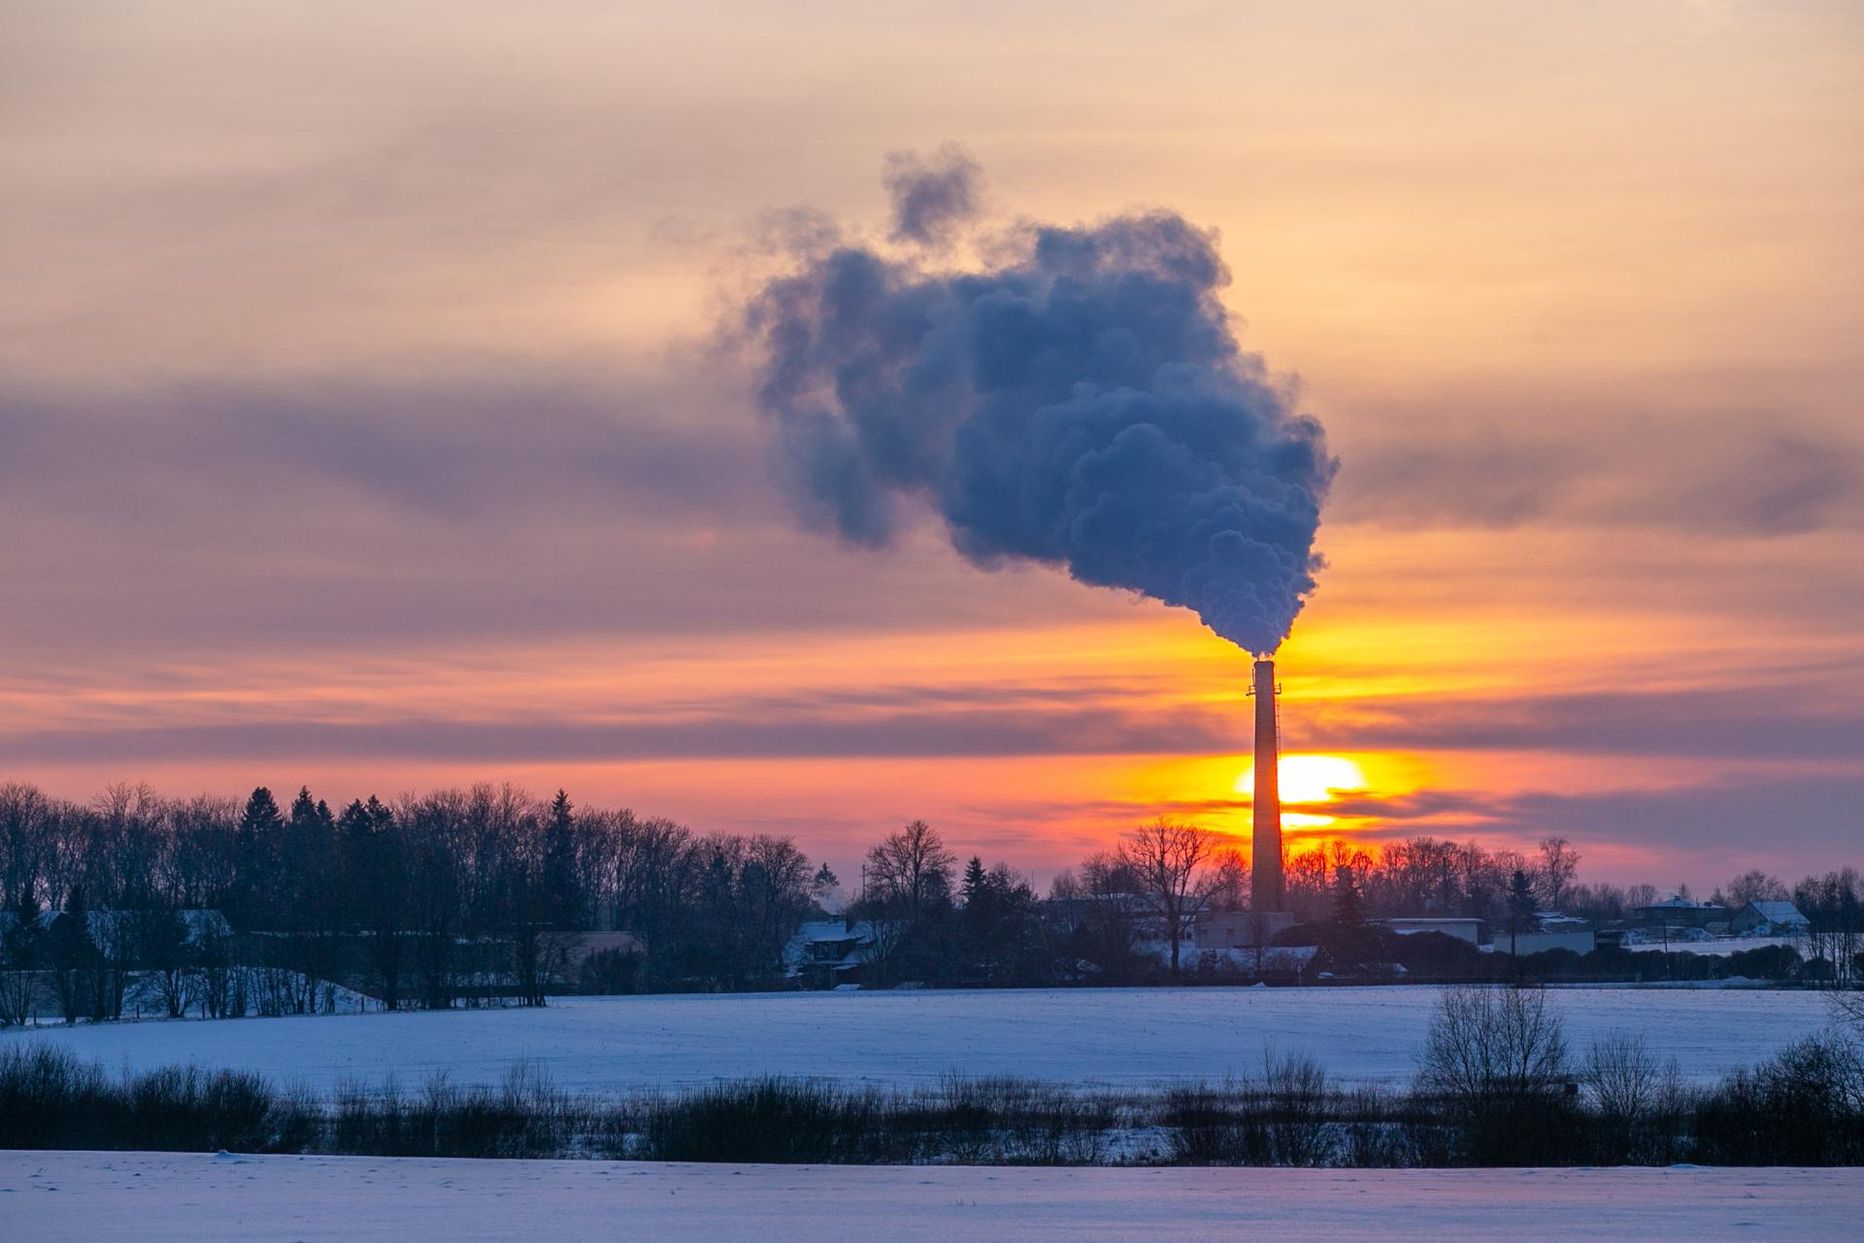 Eesti, sealhulgas Viljandi selle talve külmarekord sündisid 16. jaanuaril, mil on tehtud ka see foto.